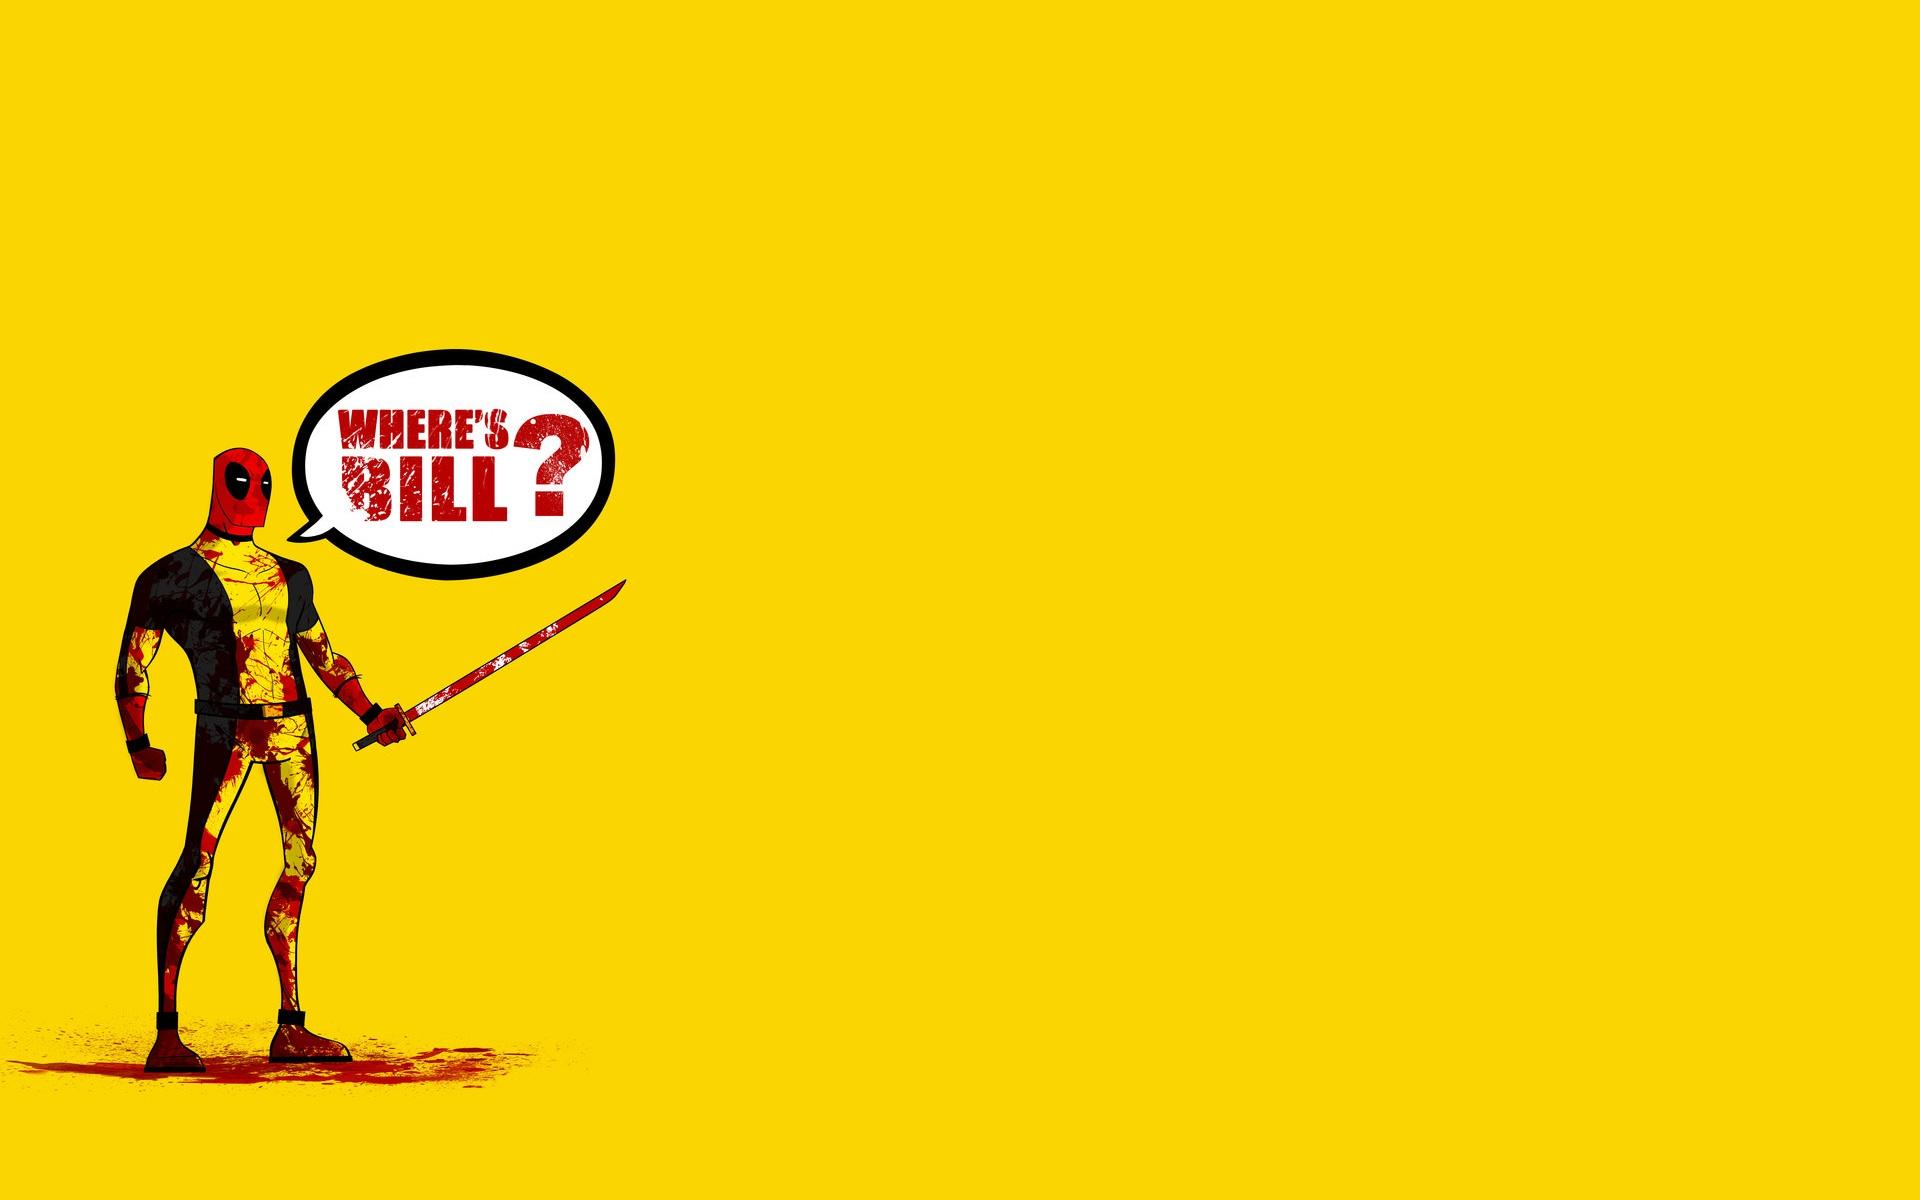 Kill Bill Wallpaper Full HD 23f4kvj 4usky